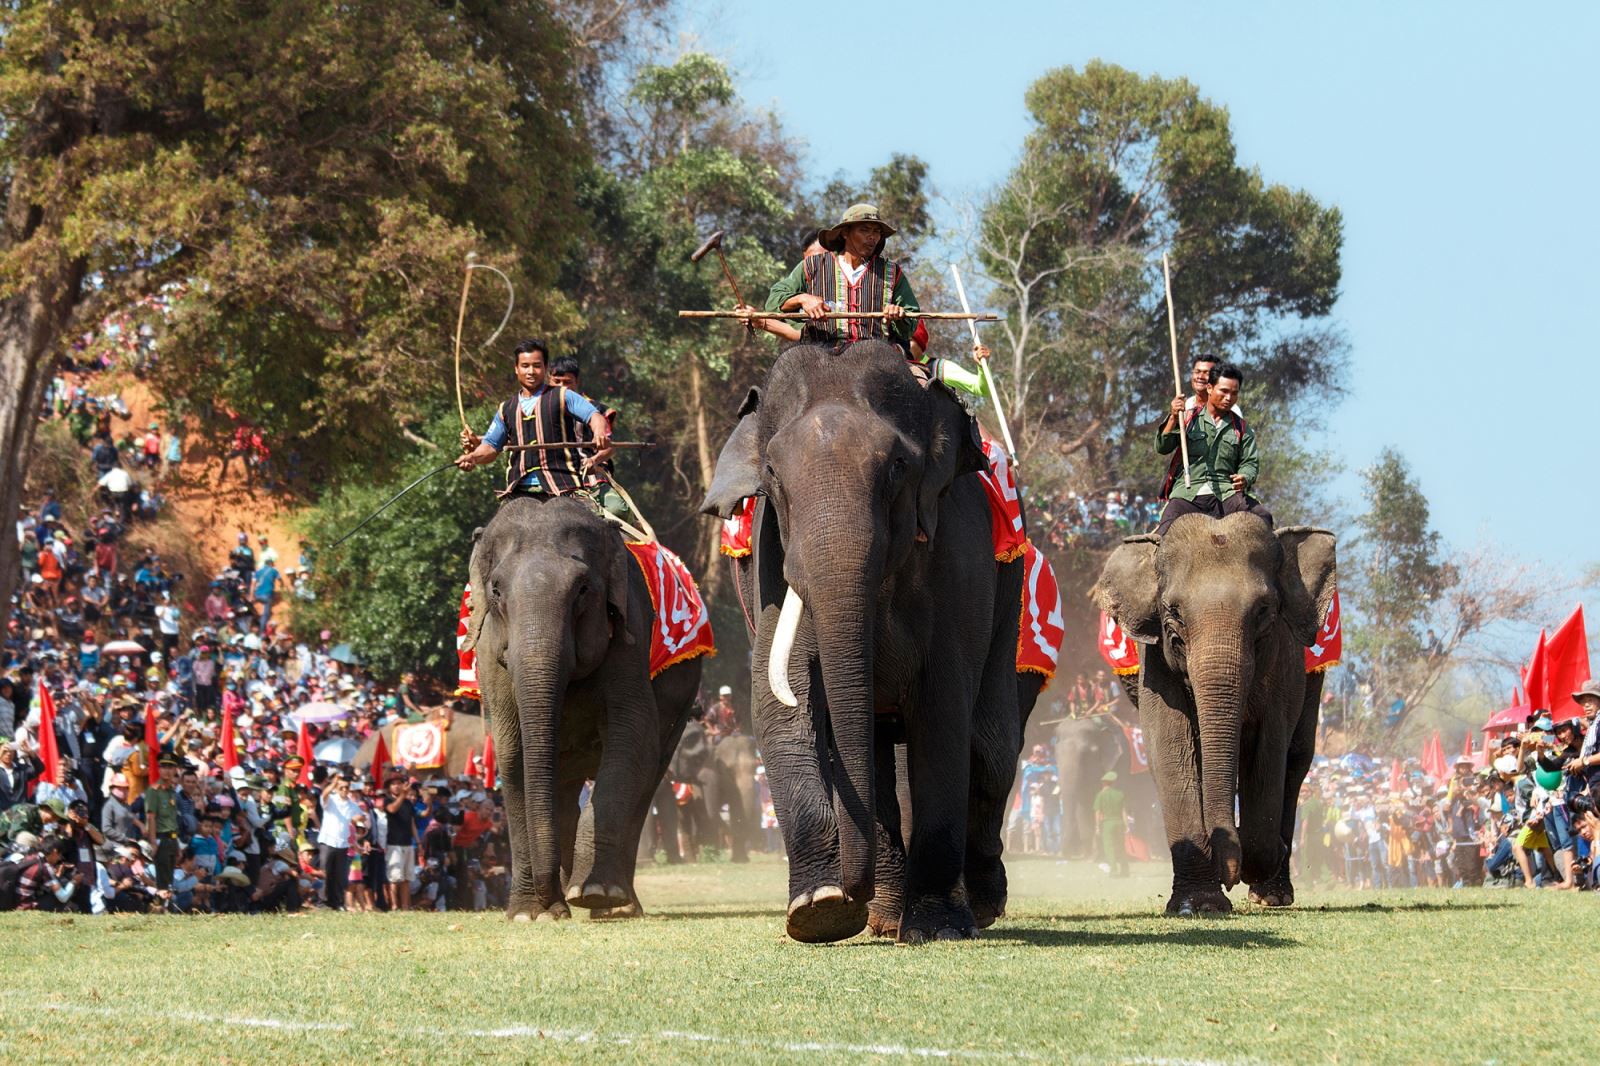 Lễ hội độc đáo đua voi trên cạn mang đậm bản sắc văn hóa Tây Nguyên được tổ chức 2 năm/lần tại huyện Lắk